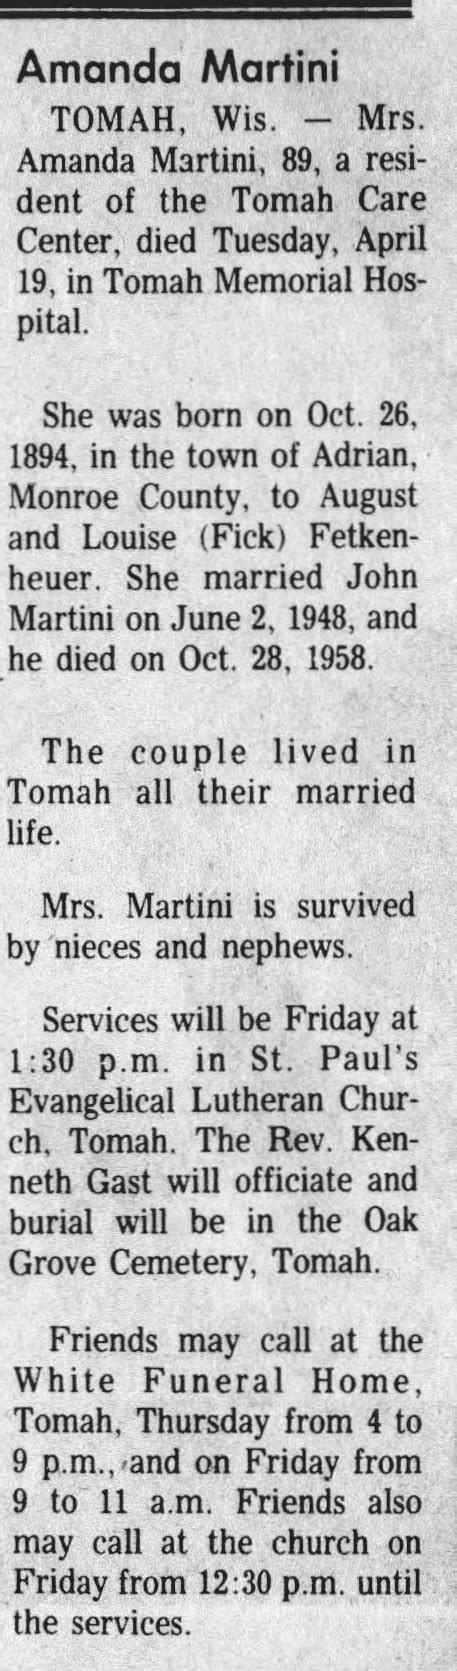 amanda martini obituary newspaperscom